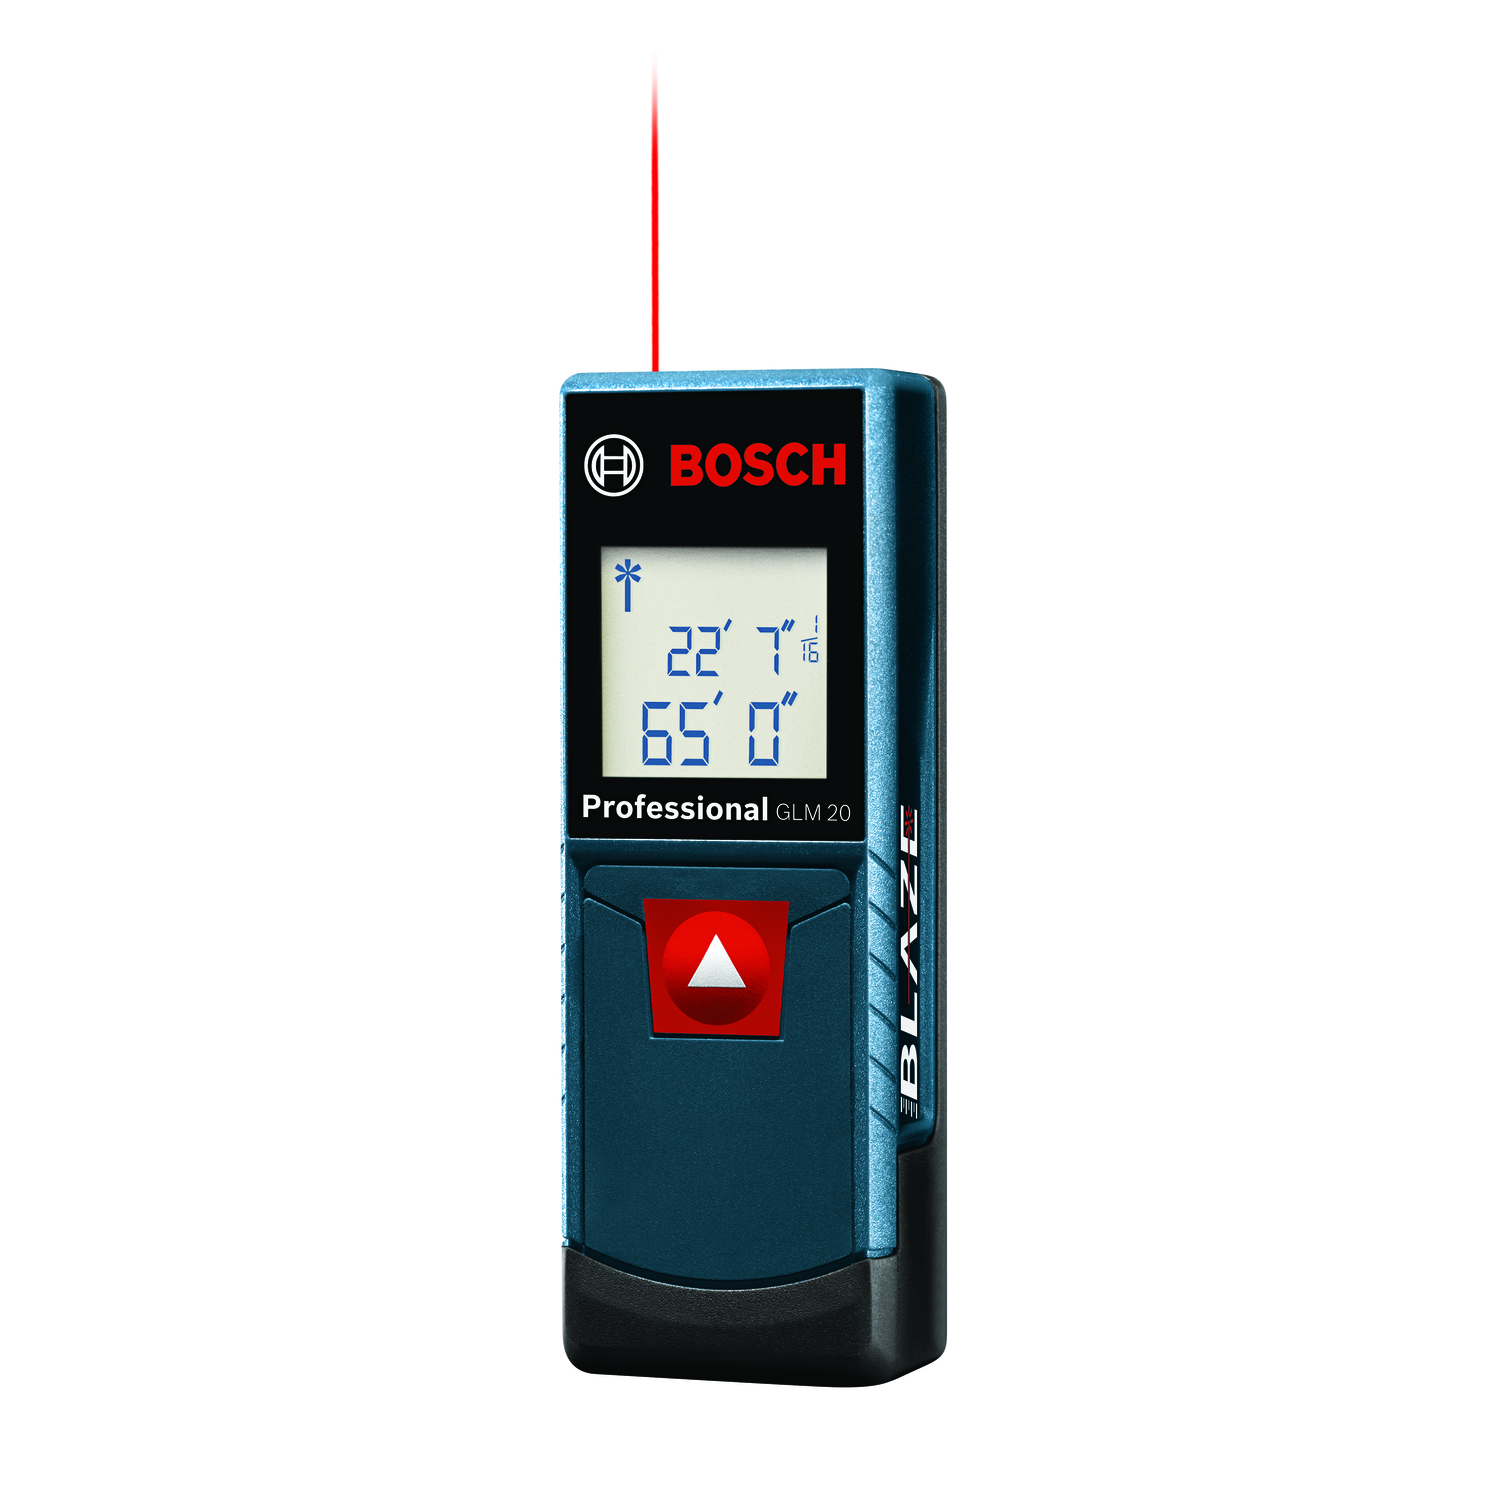 Bosch Blaze 4 in. L X 1.4 in. W With backlit display Laser Distance Measurer 65 ft. Black/Blue 1 pc